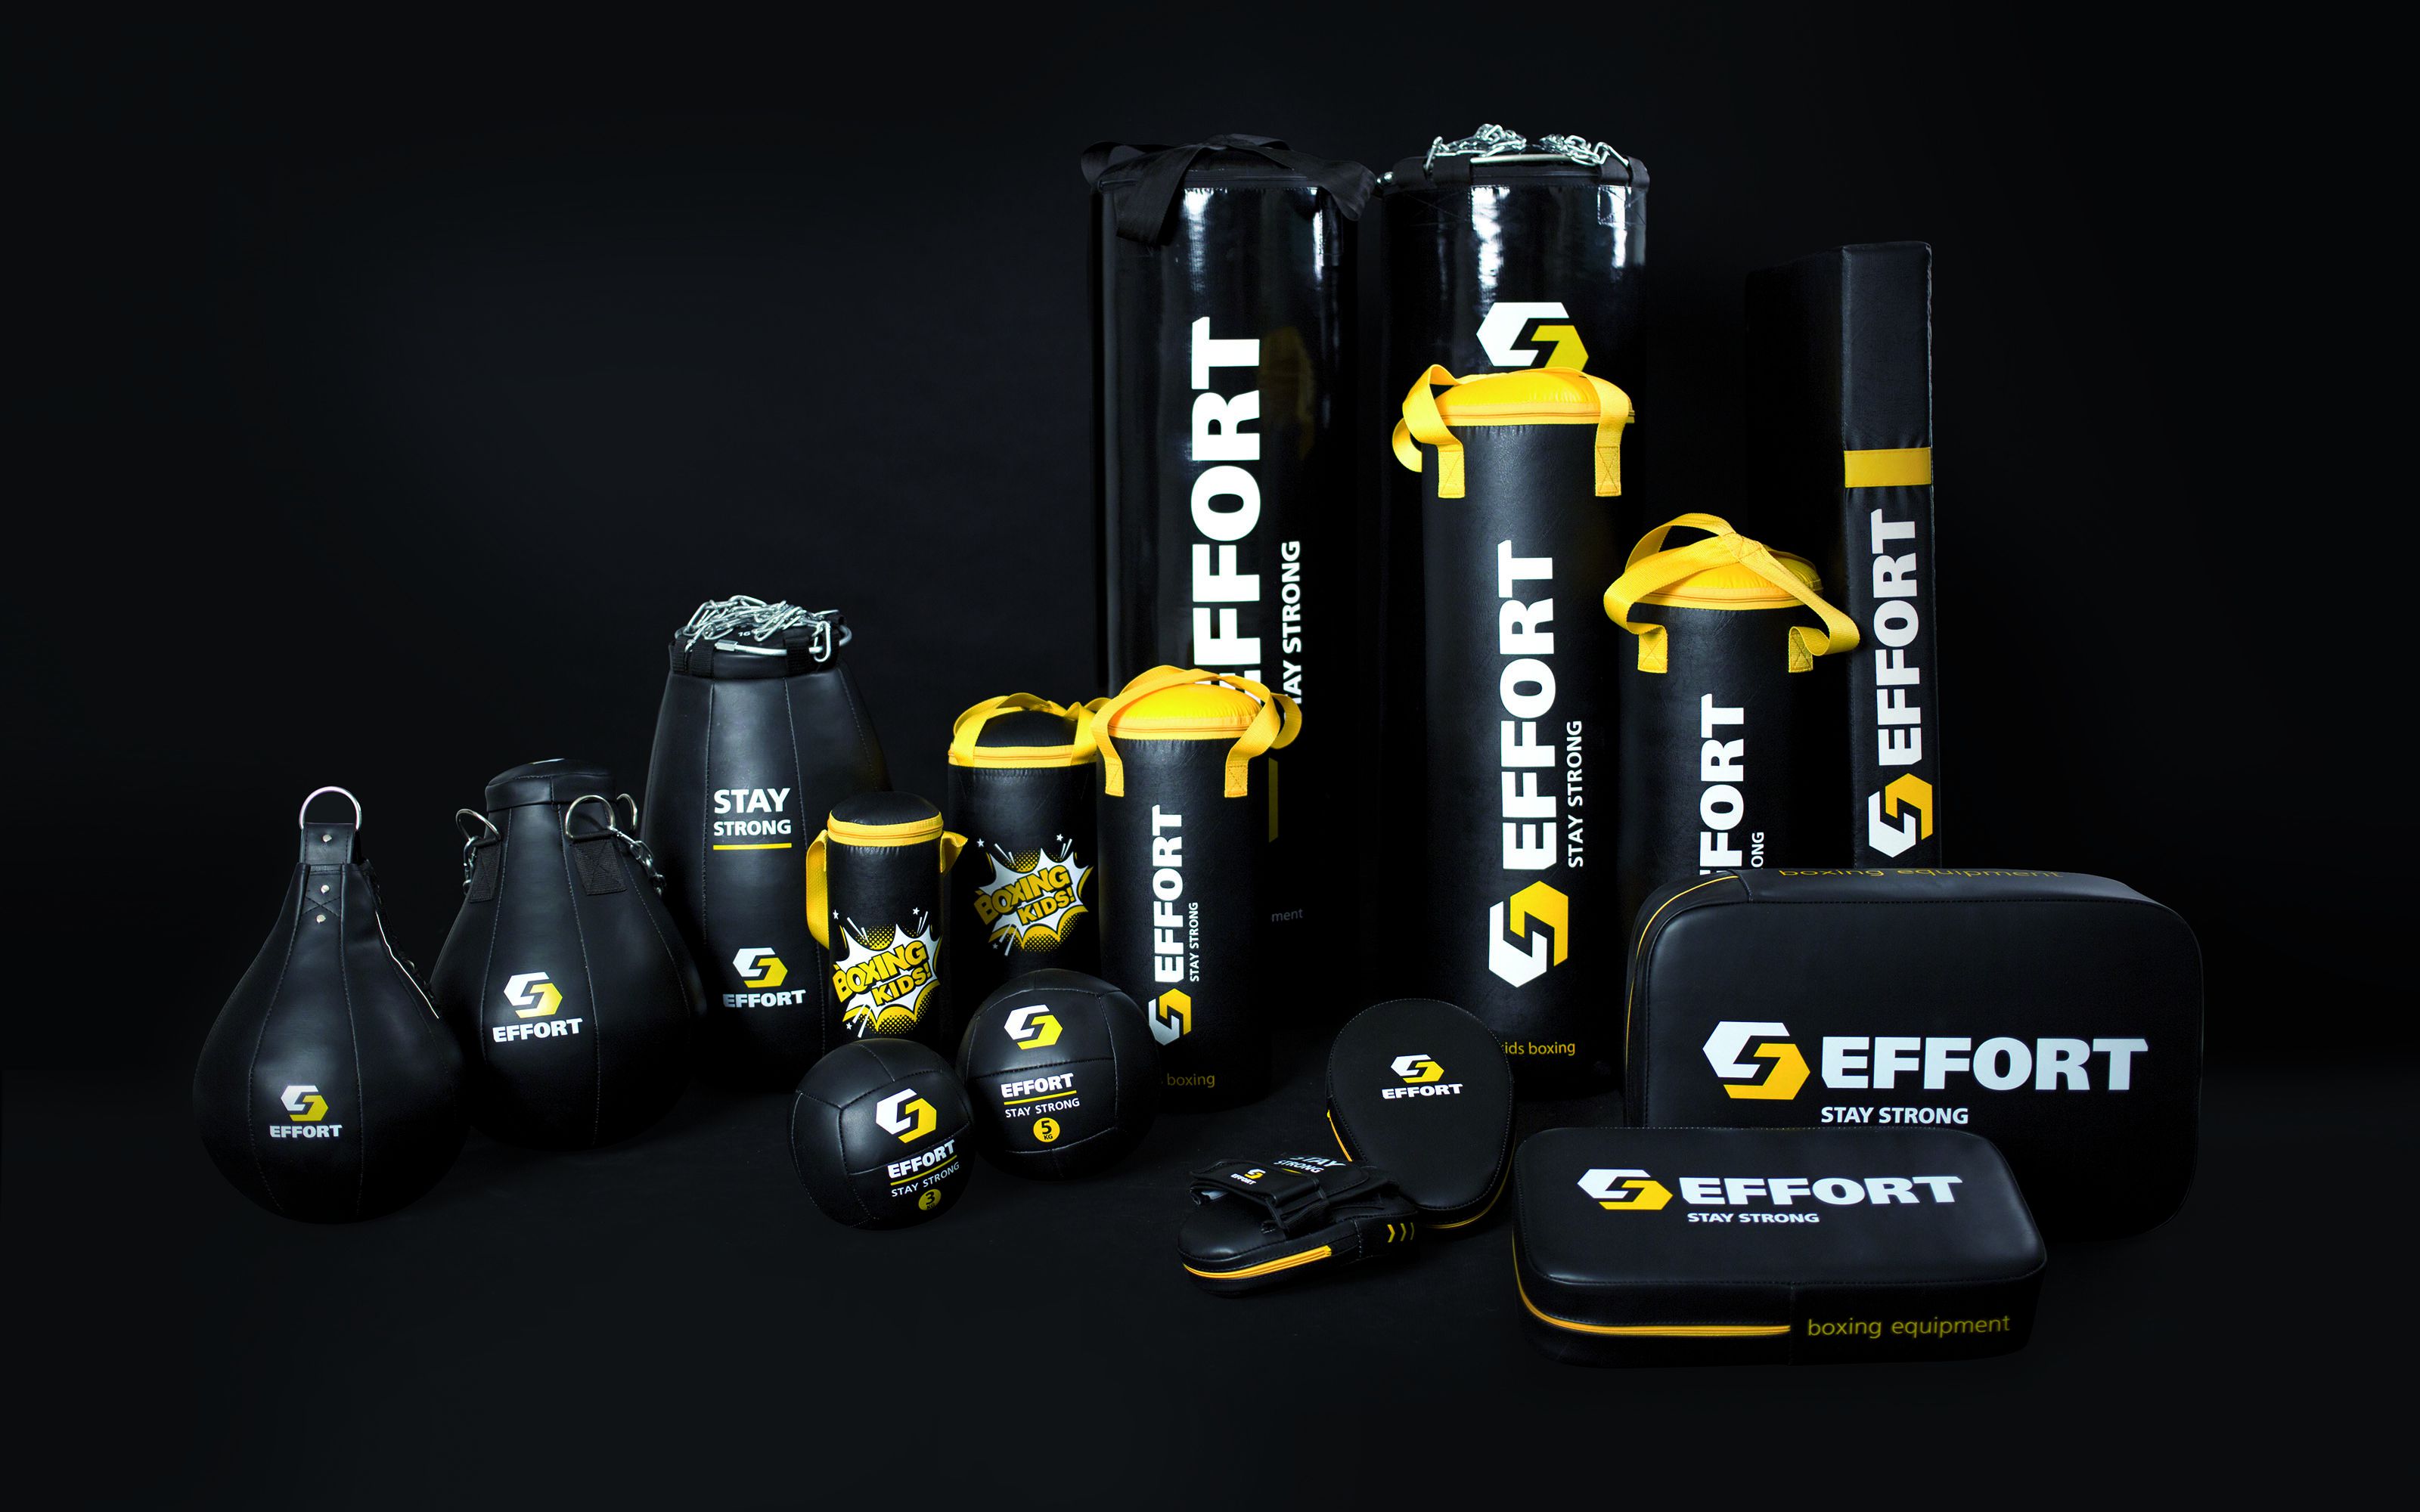 Размещение логотипа на продукции бренда EFFORT (эфорт) – агентство Мухина Дизайн (Muhina Design)